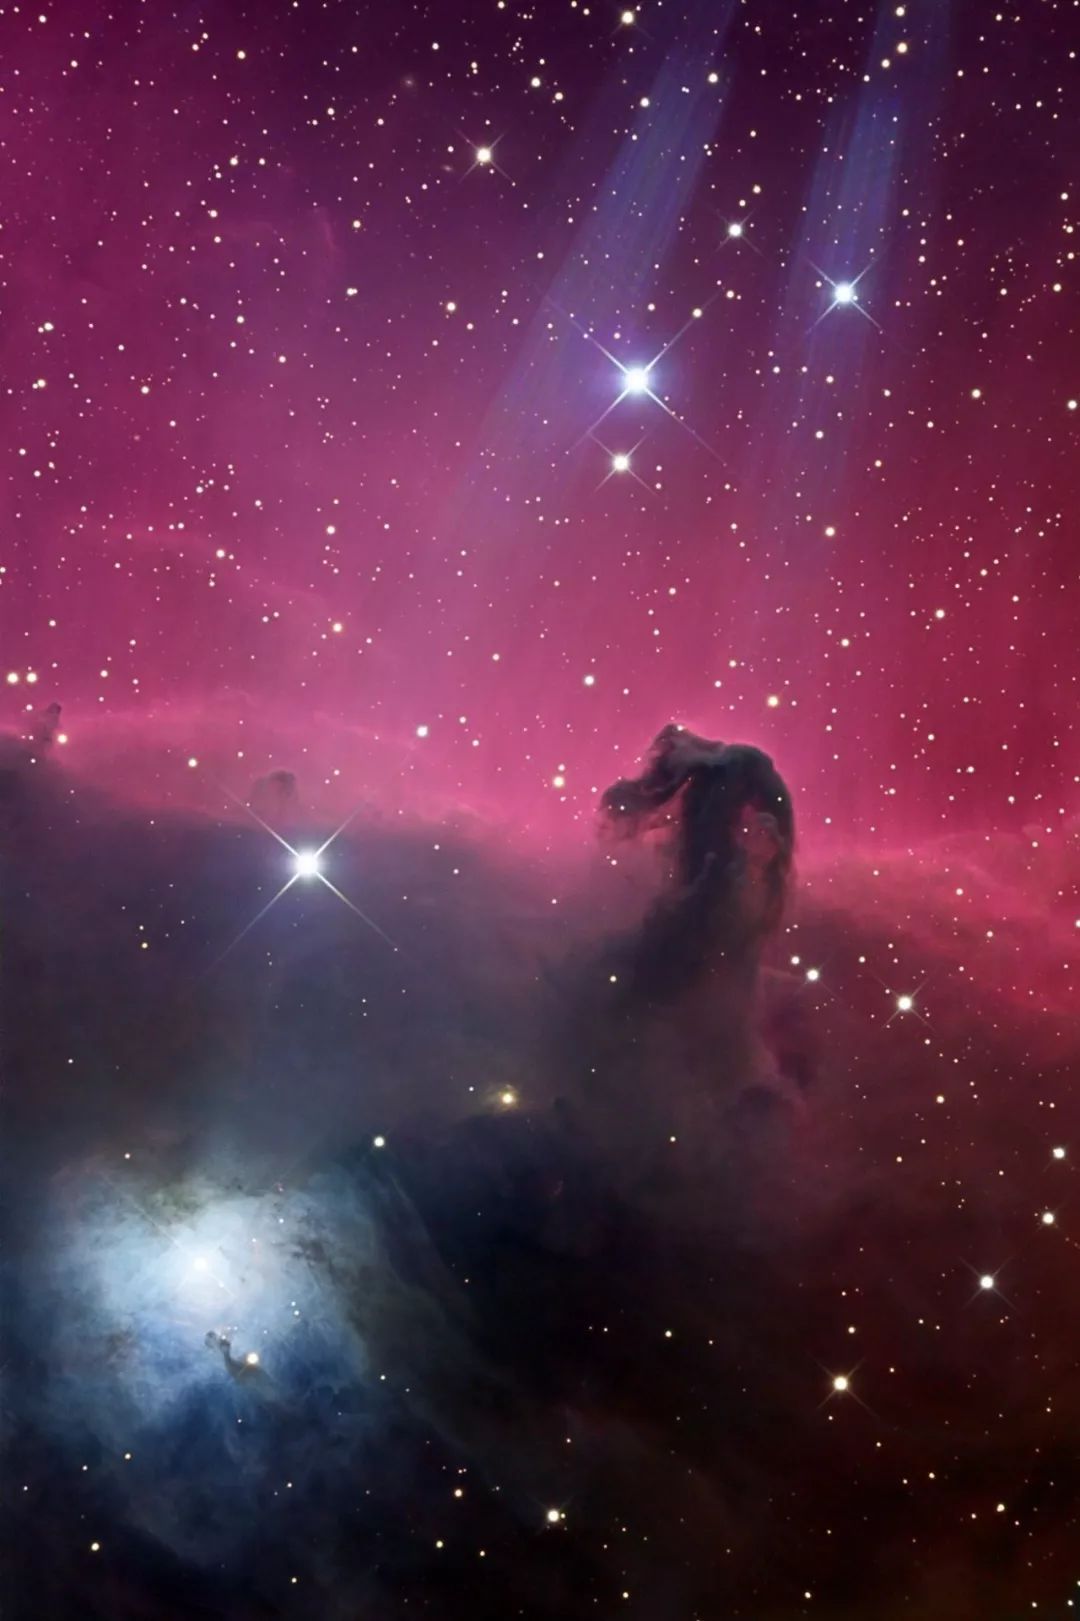 猎户座马头星云这一舞便过去了万年,无数恒星在宇宙的空间中生存和